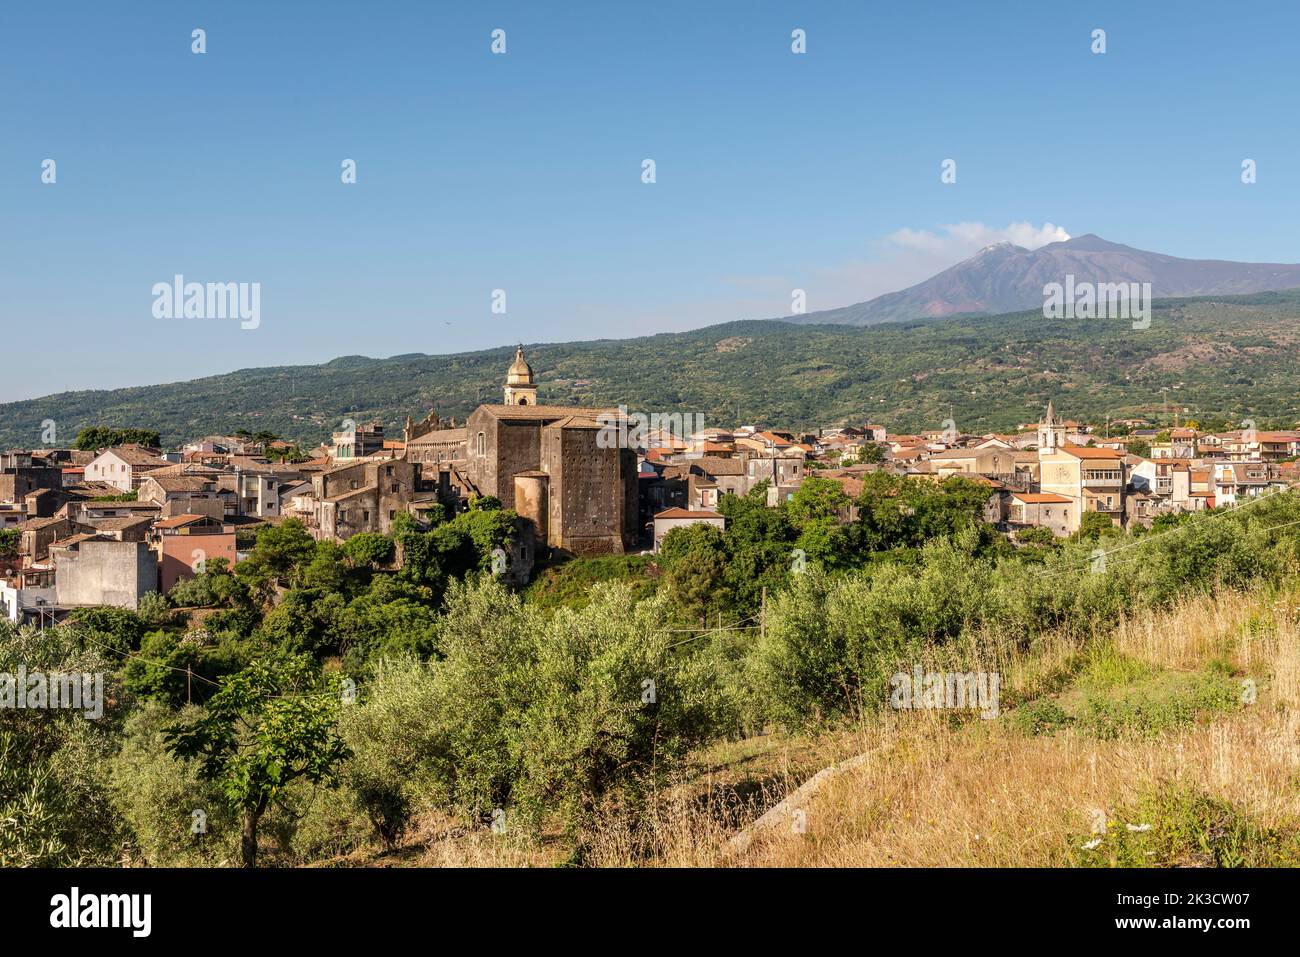 La petite ville de Linguaglossa perchée sur les pentes nord de l'Etna, Sicile, Italie Banque D'Images